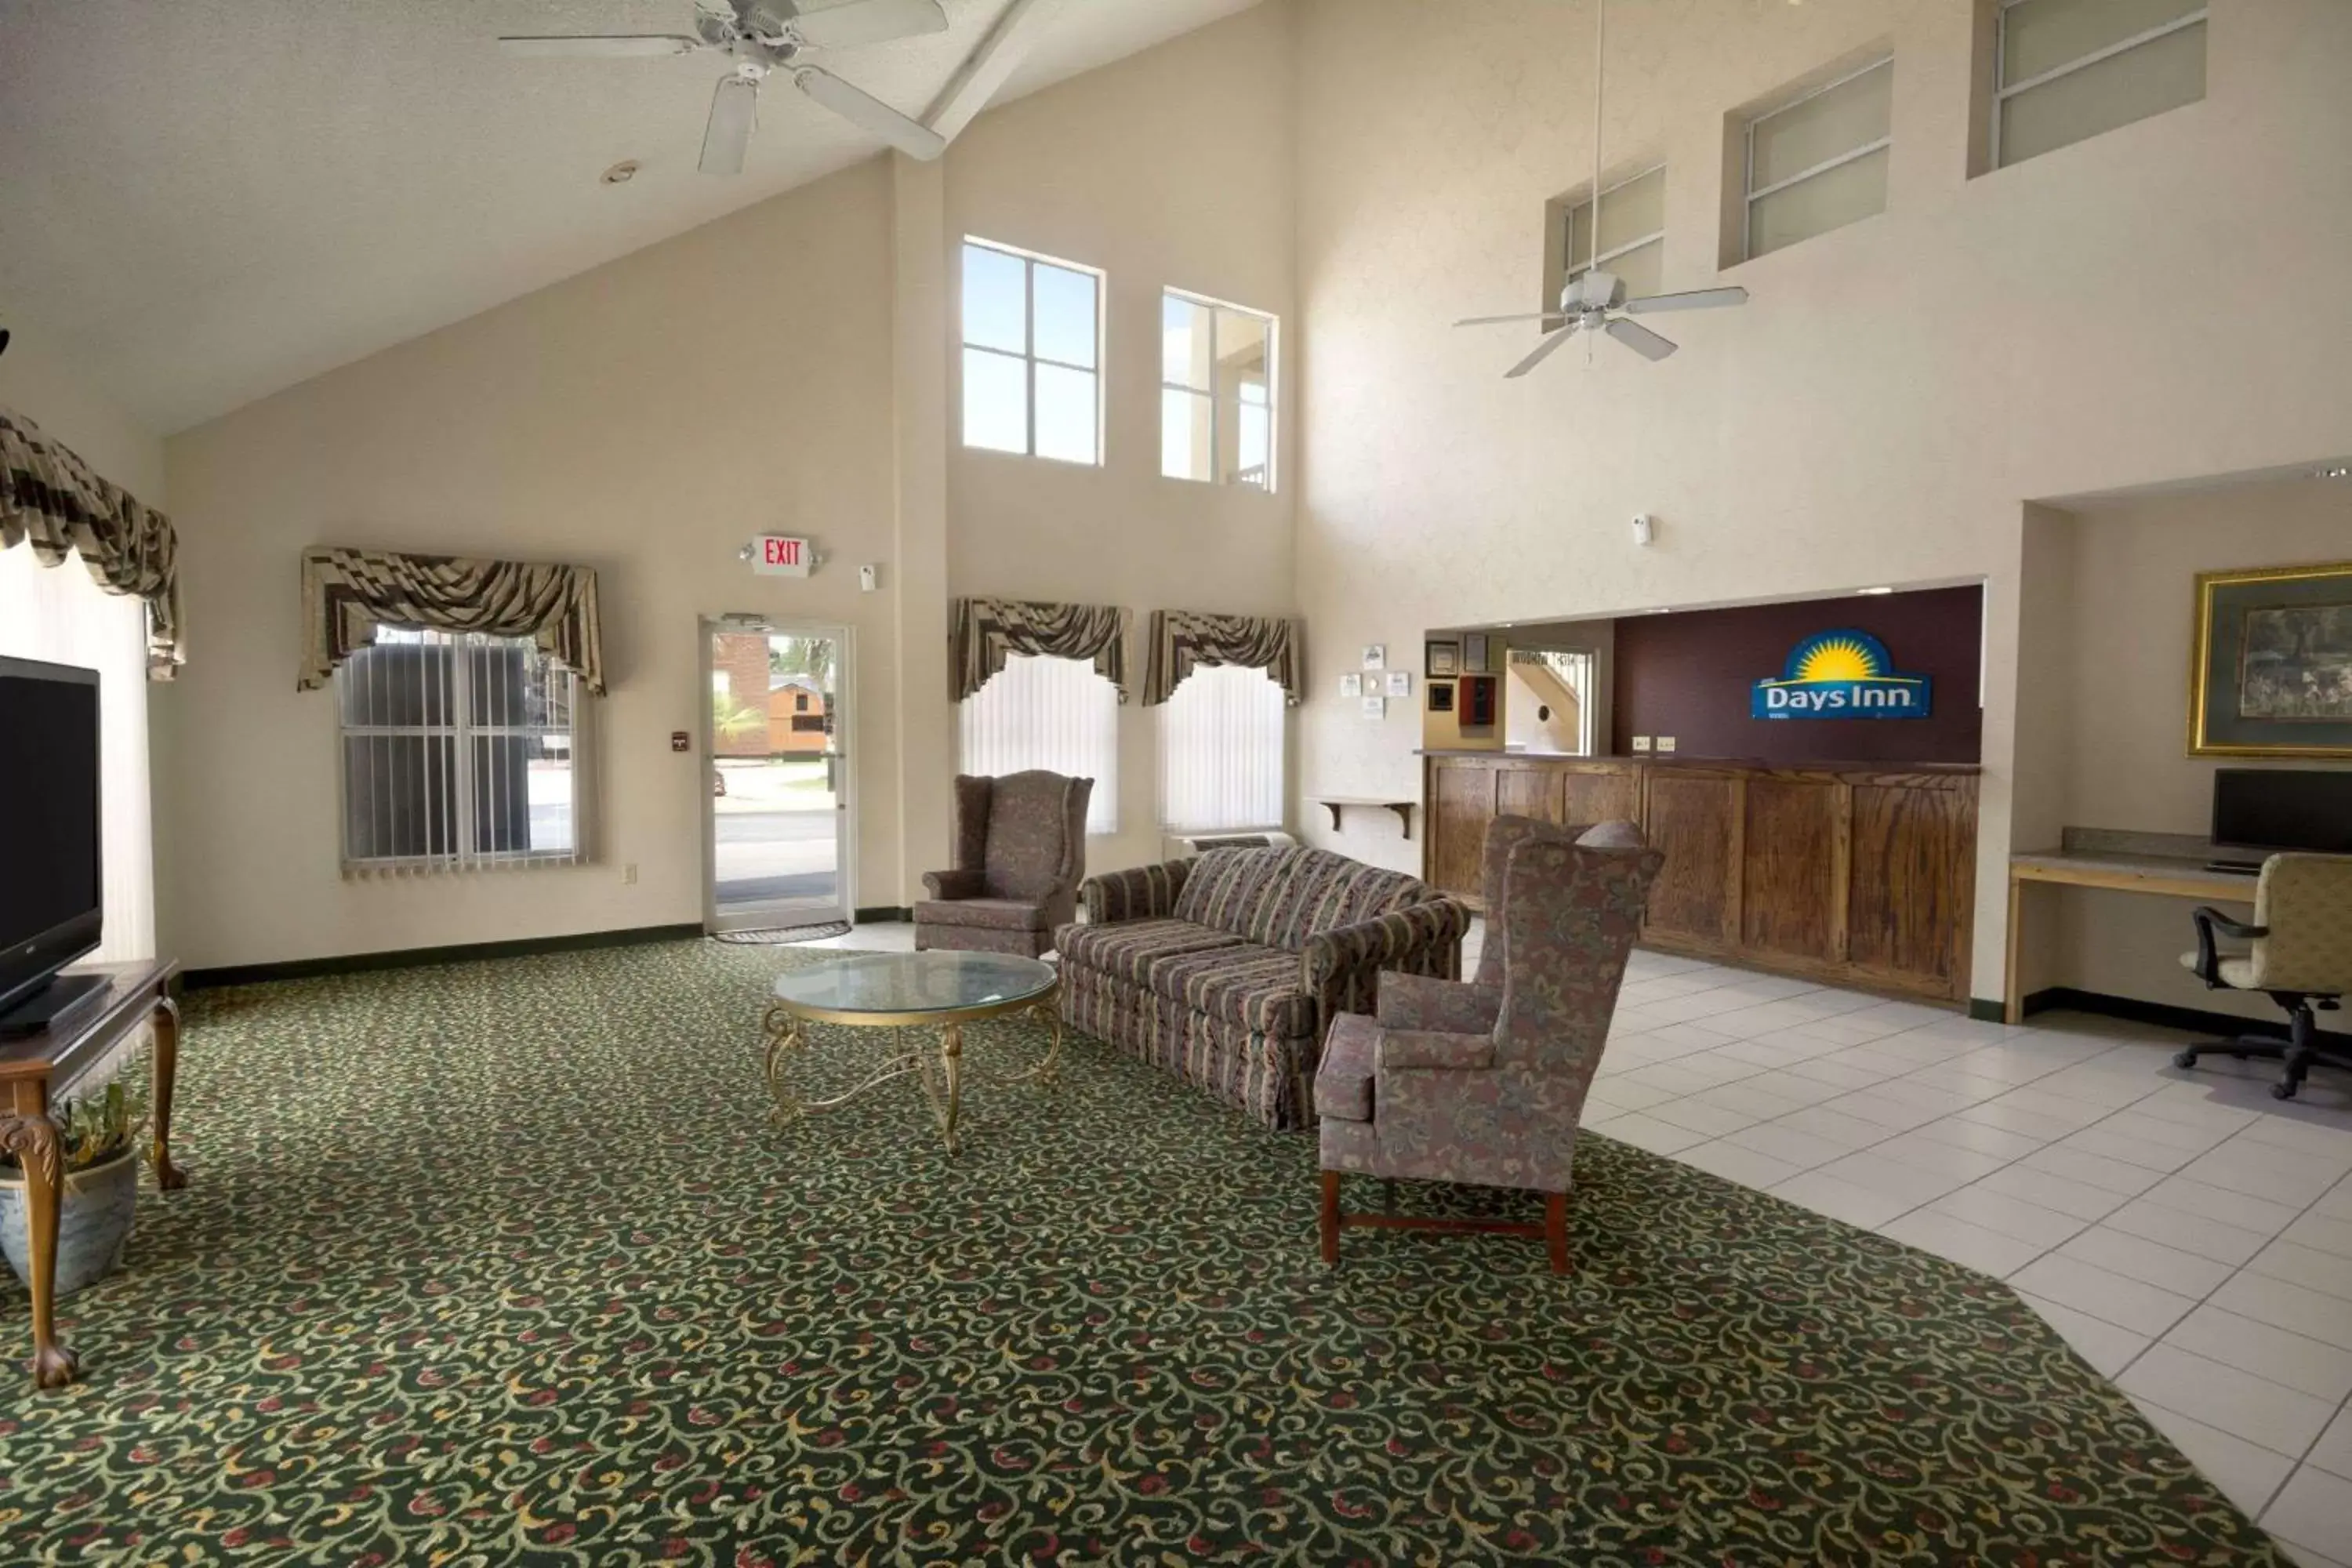 Lobby or reception, Seating Area in Days Inn by Wyndham Alma